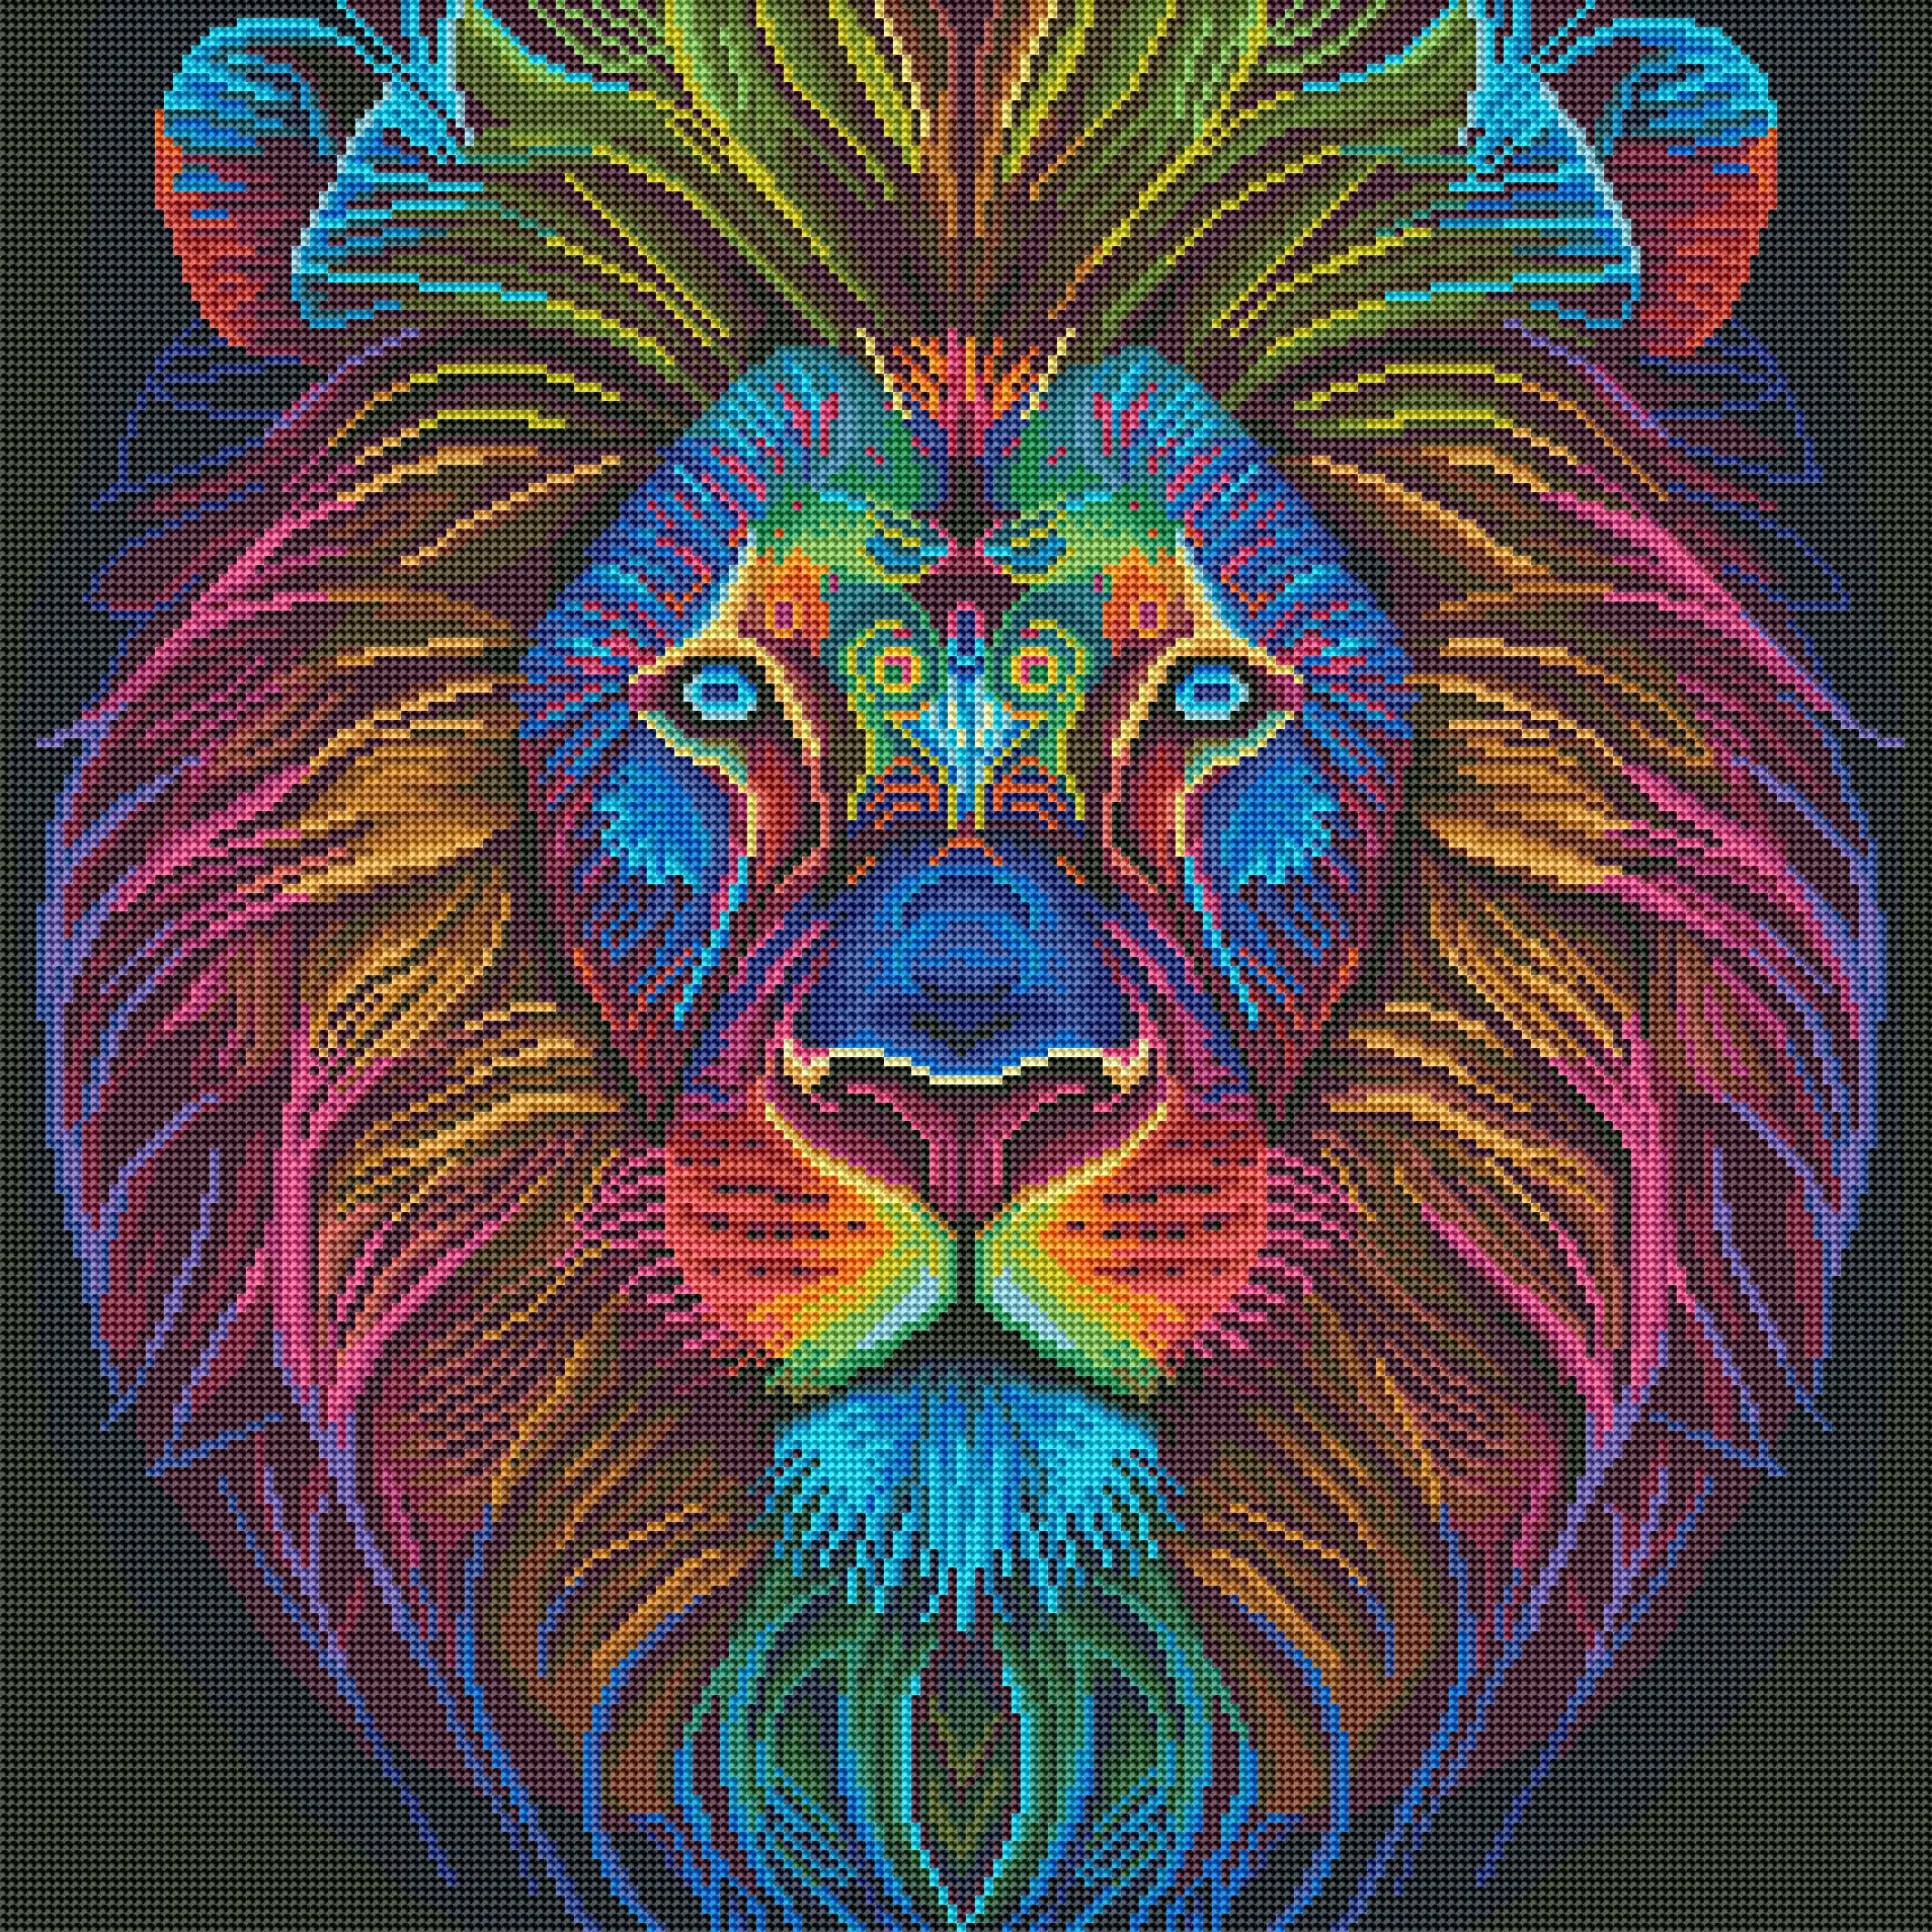 Spirit of a Lion